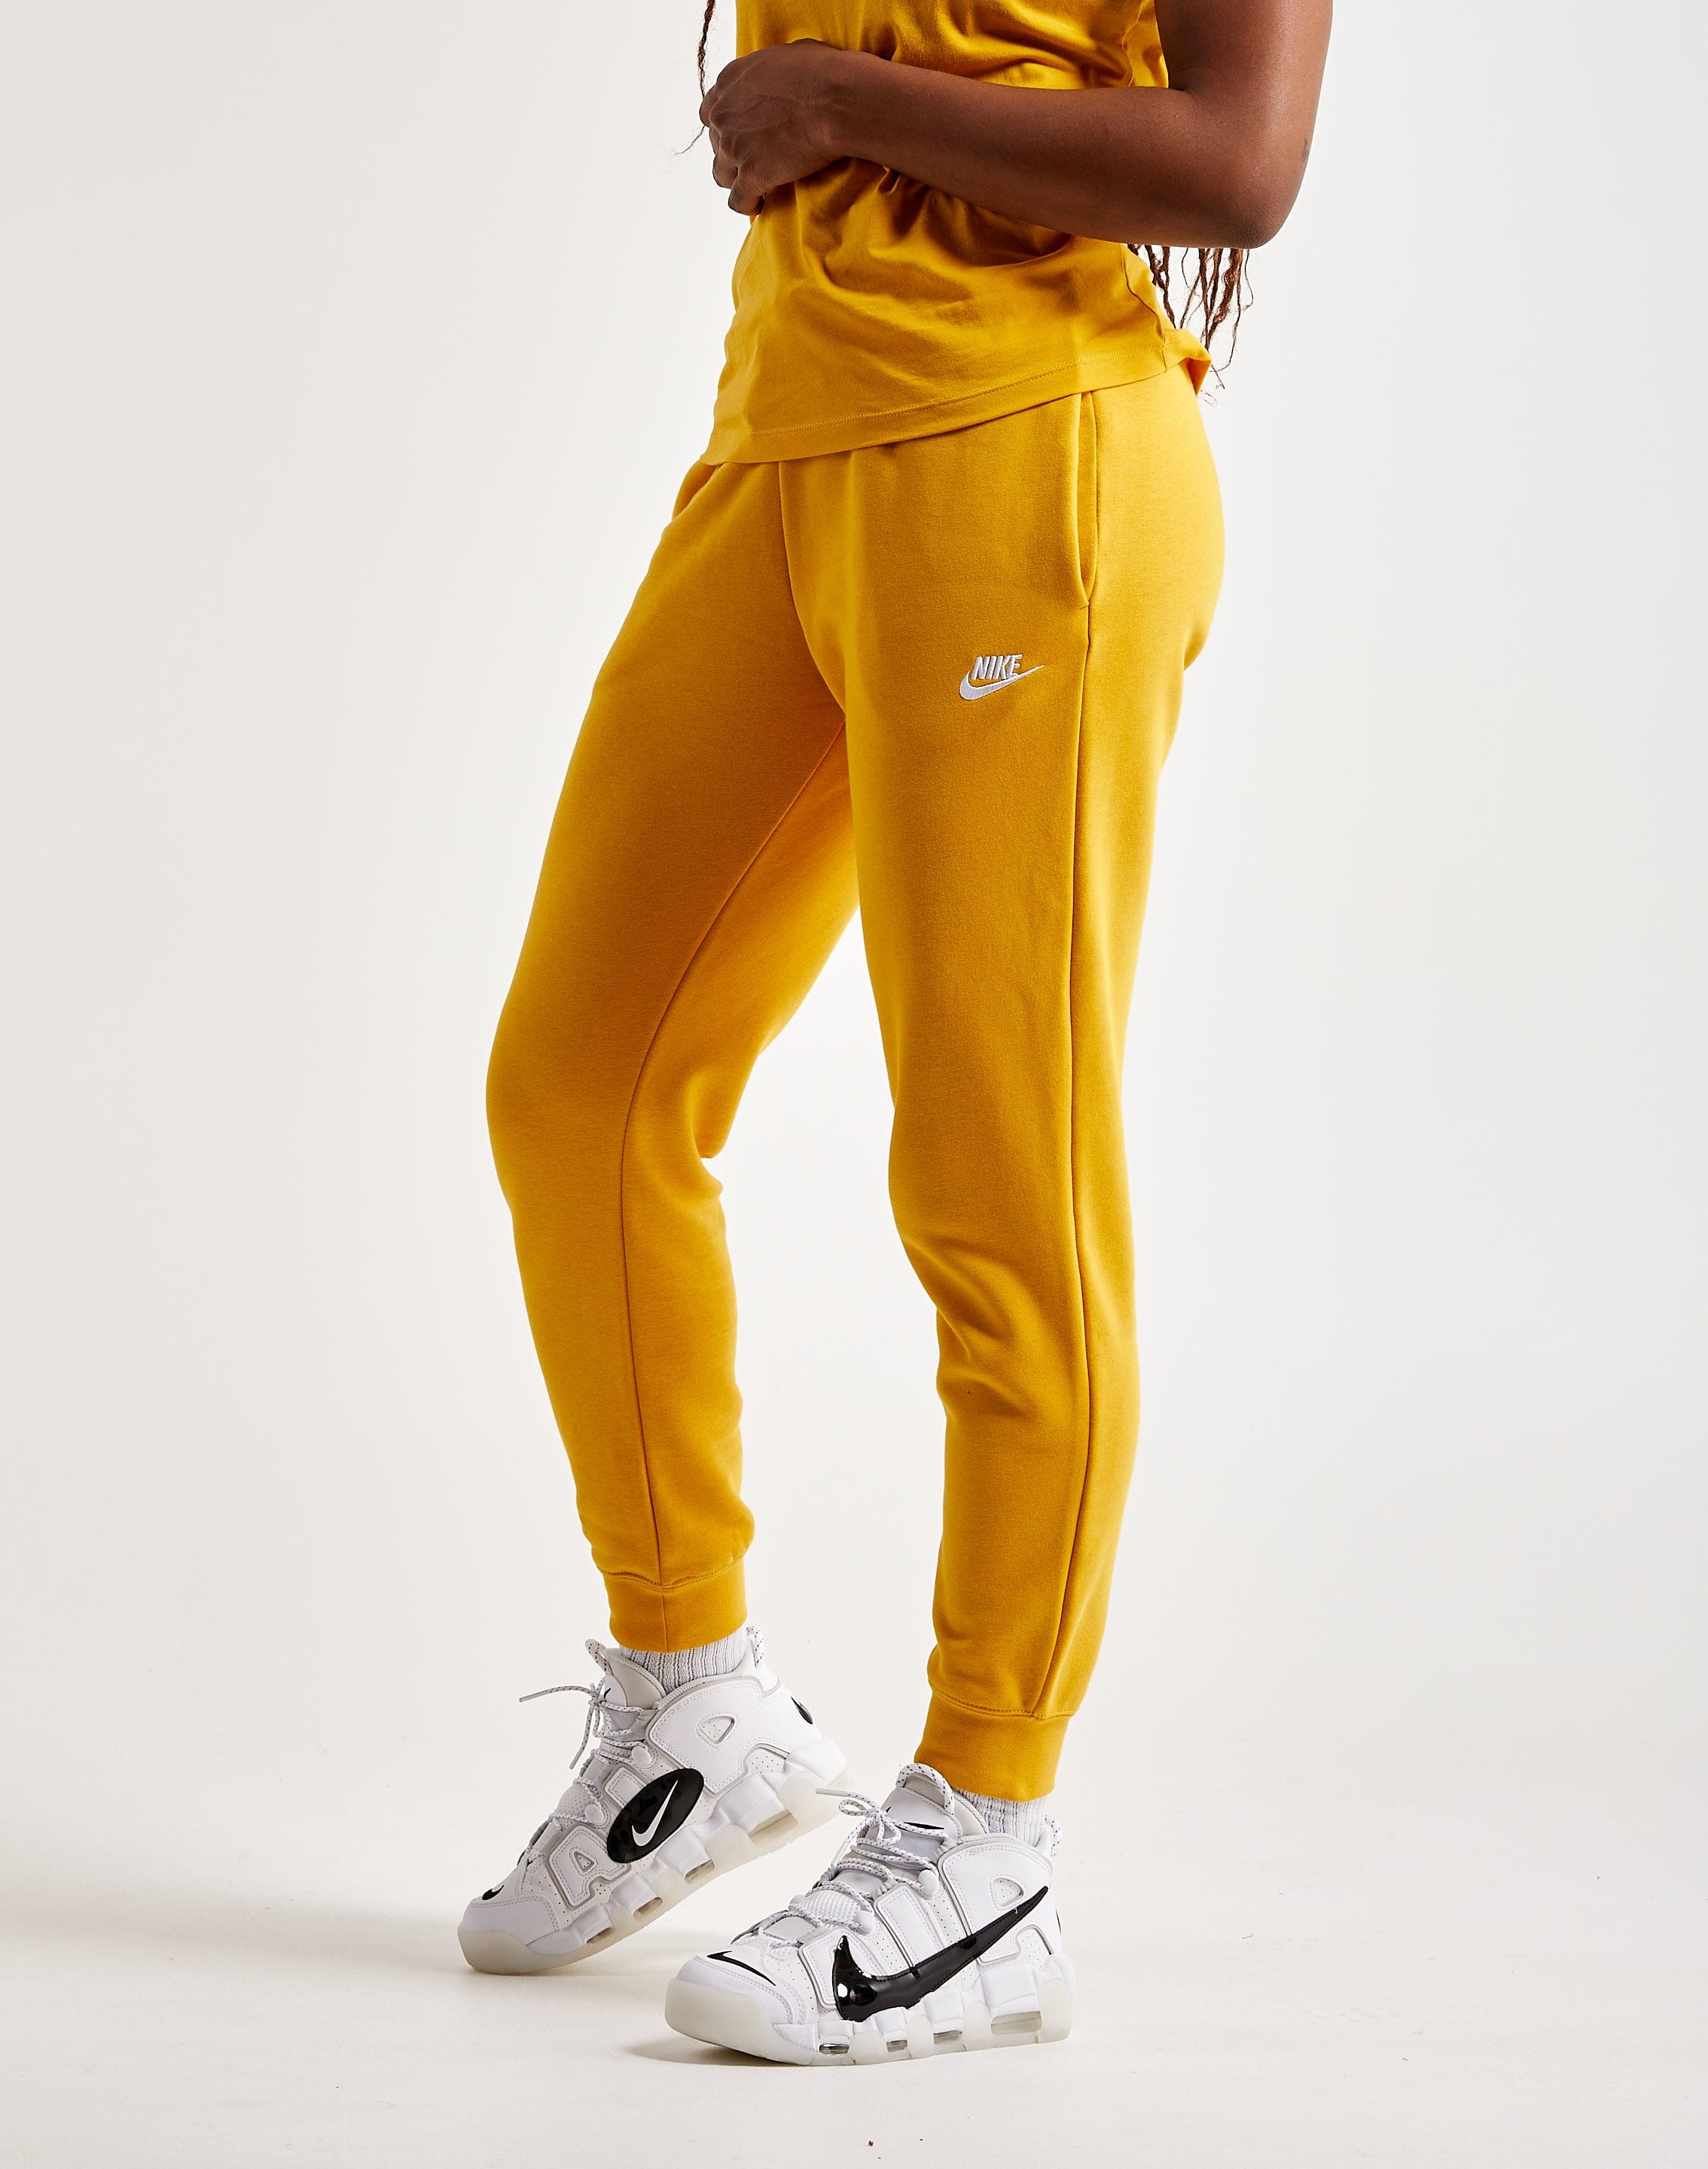 Women's Nike Sportswear Club Fleece Midrise Pants